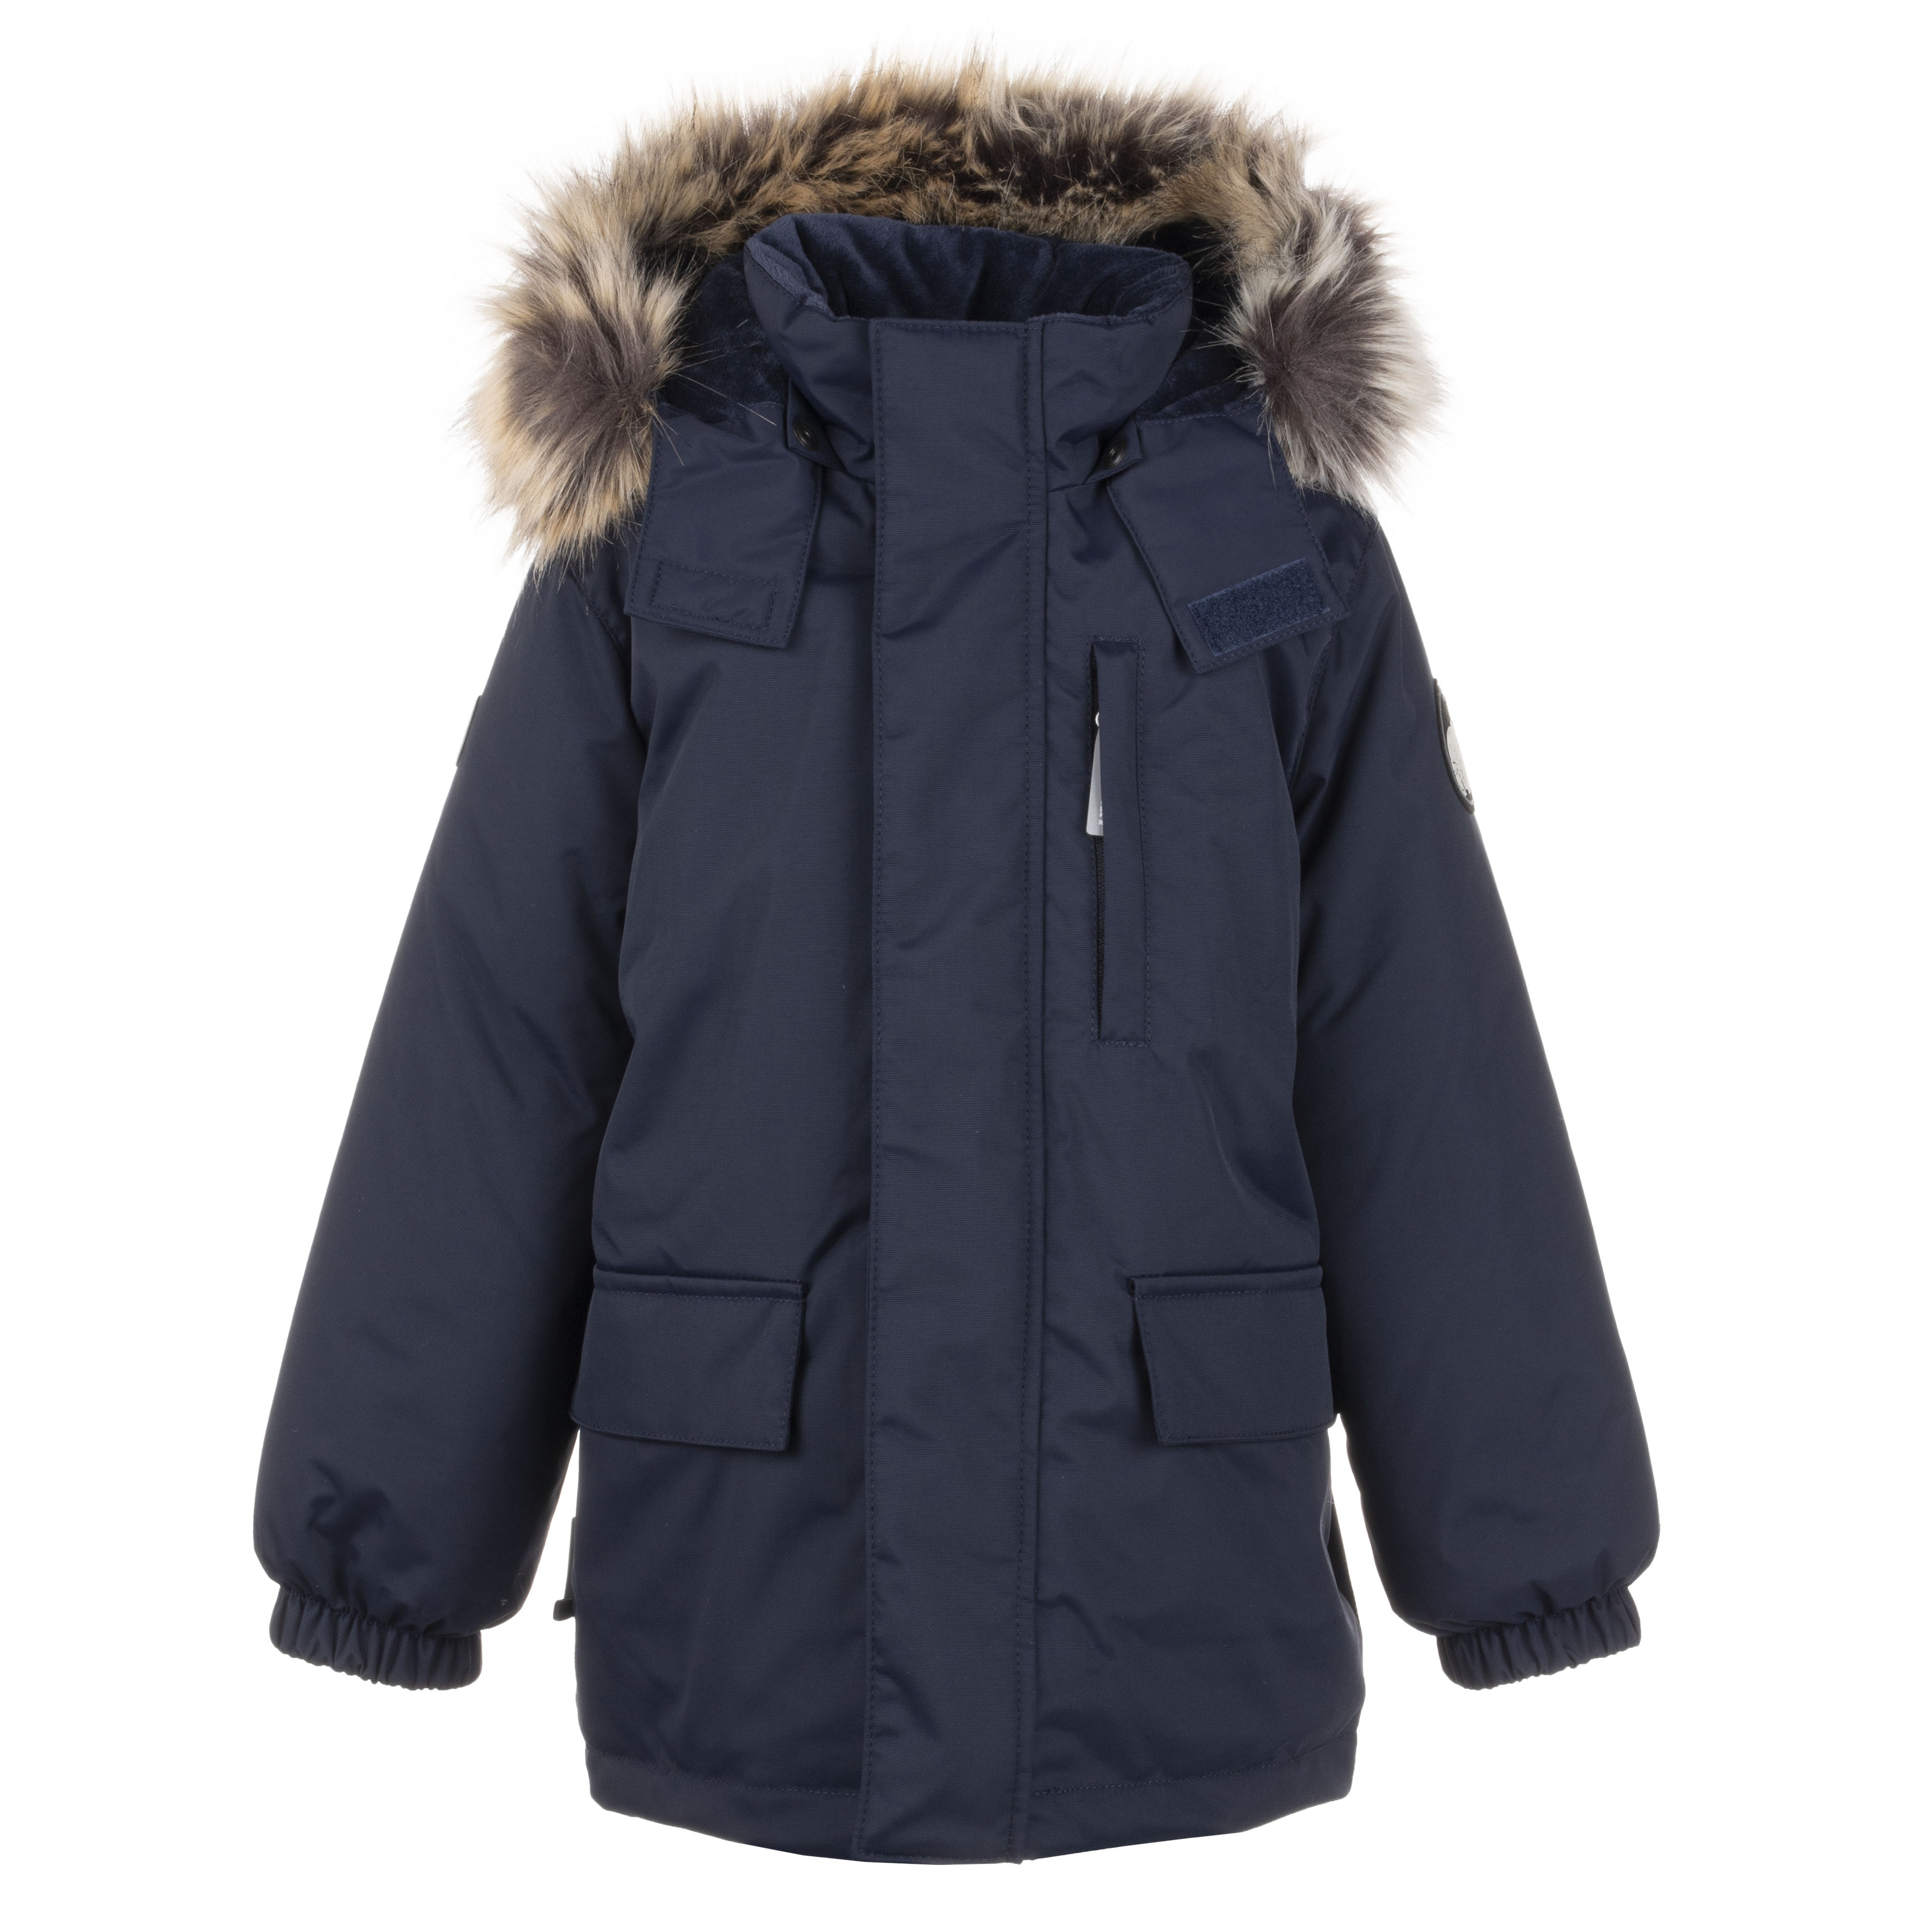 Куртка-парка Kerry SNOW K21441/229 цв. синий р. 104